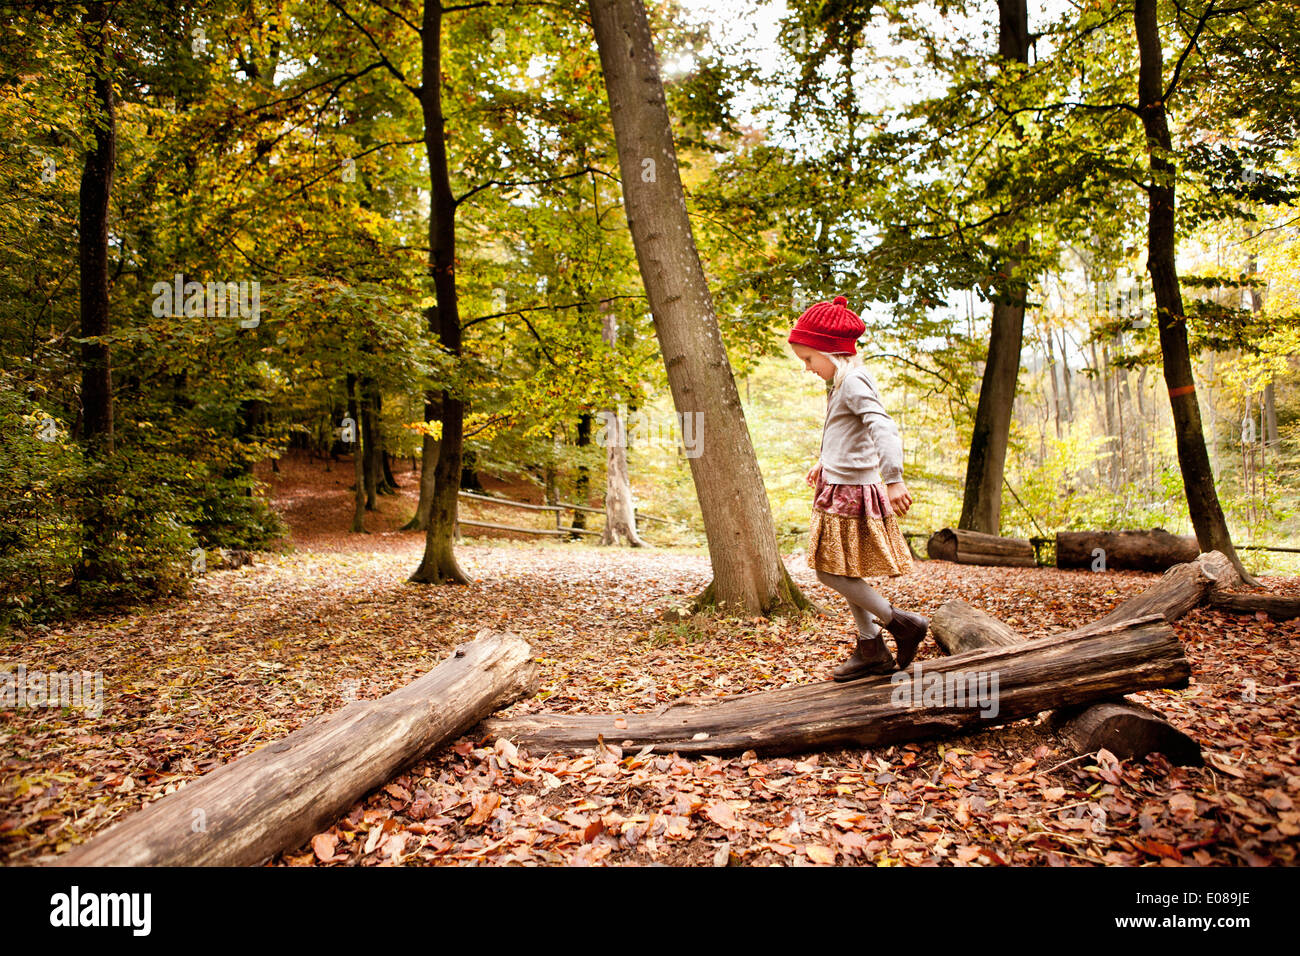 Full length of girl walking on log in forest Stock Photo